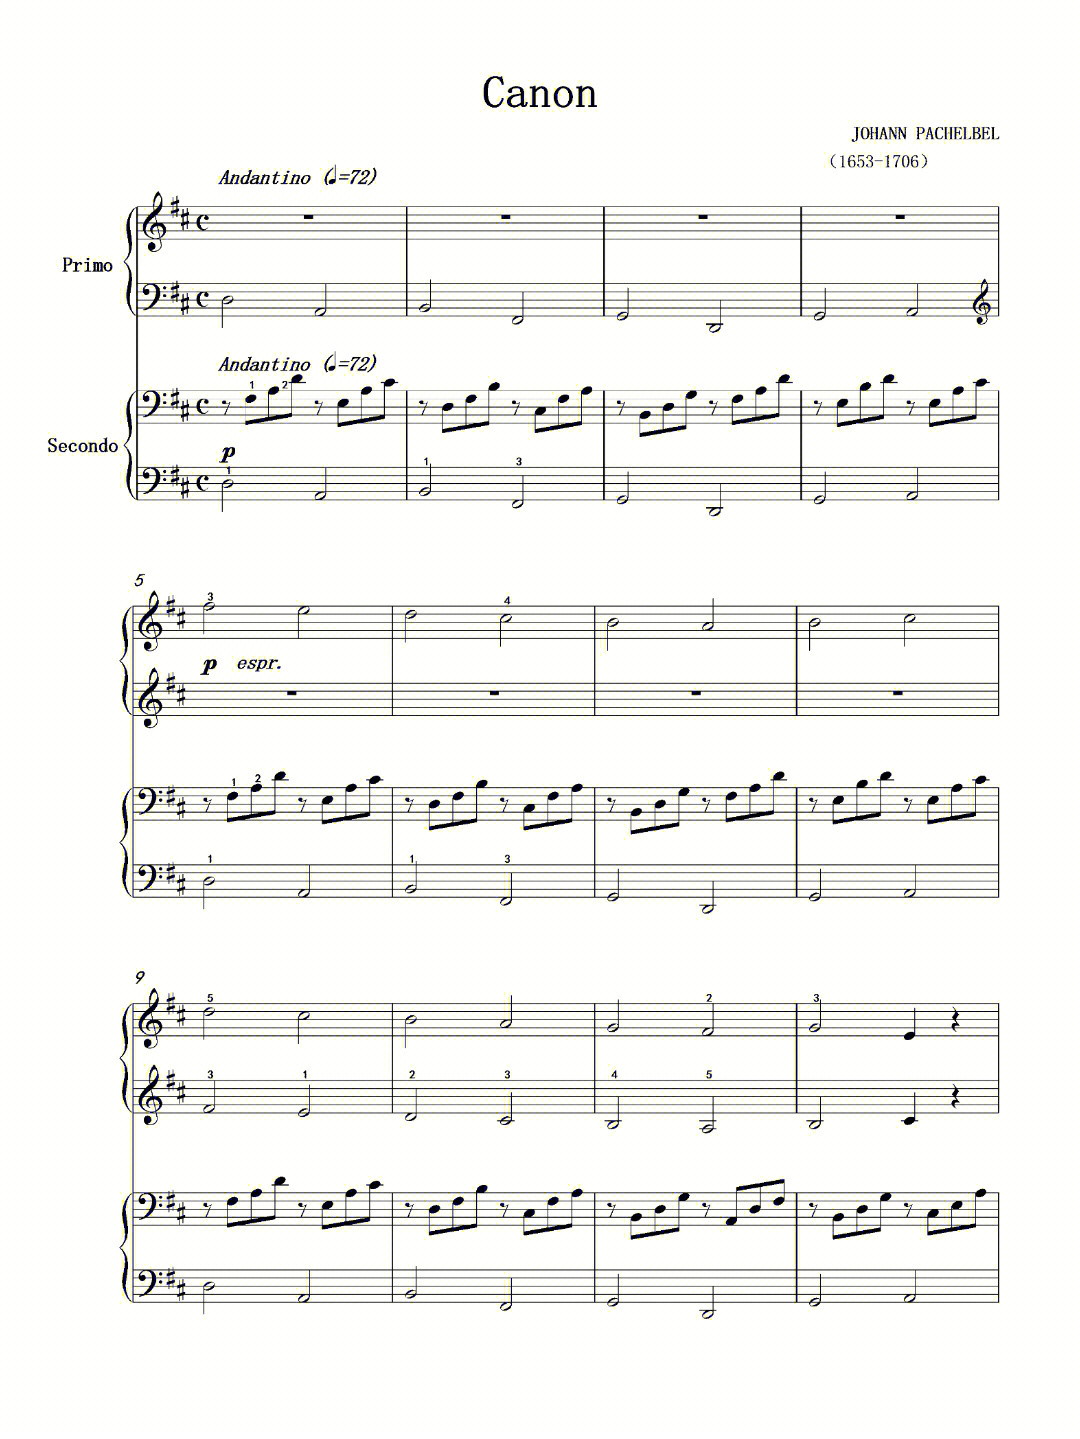 双小提琴卡农谱子图片